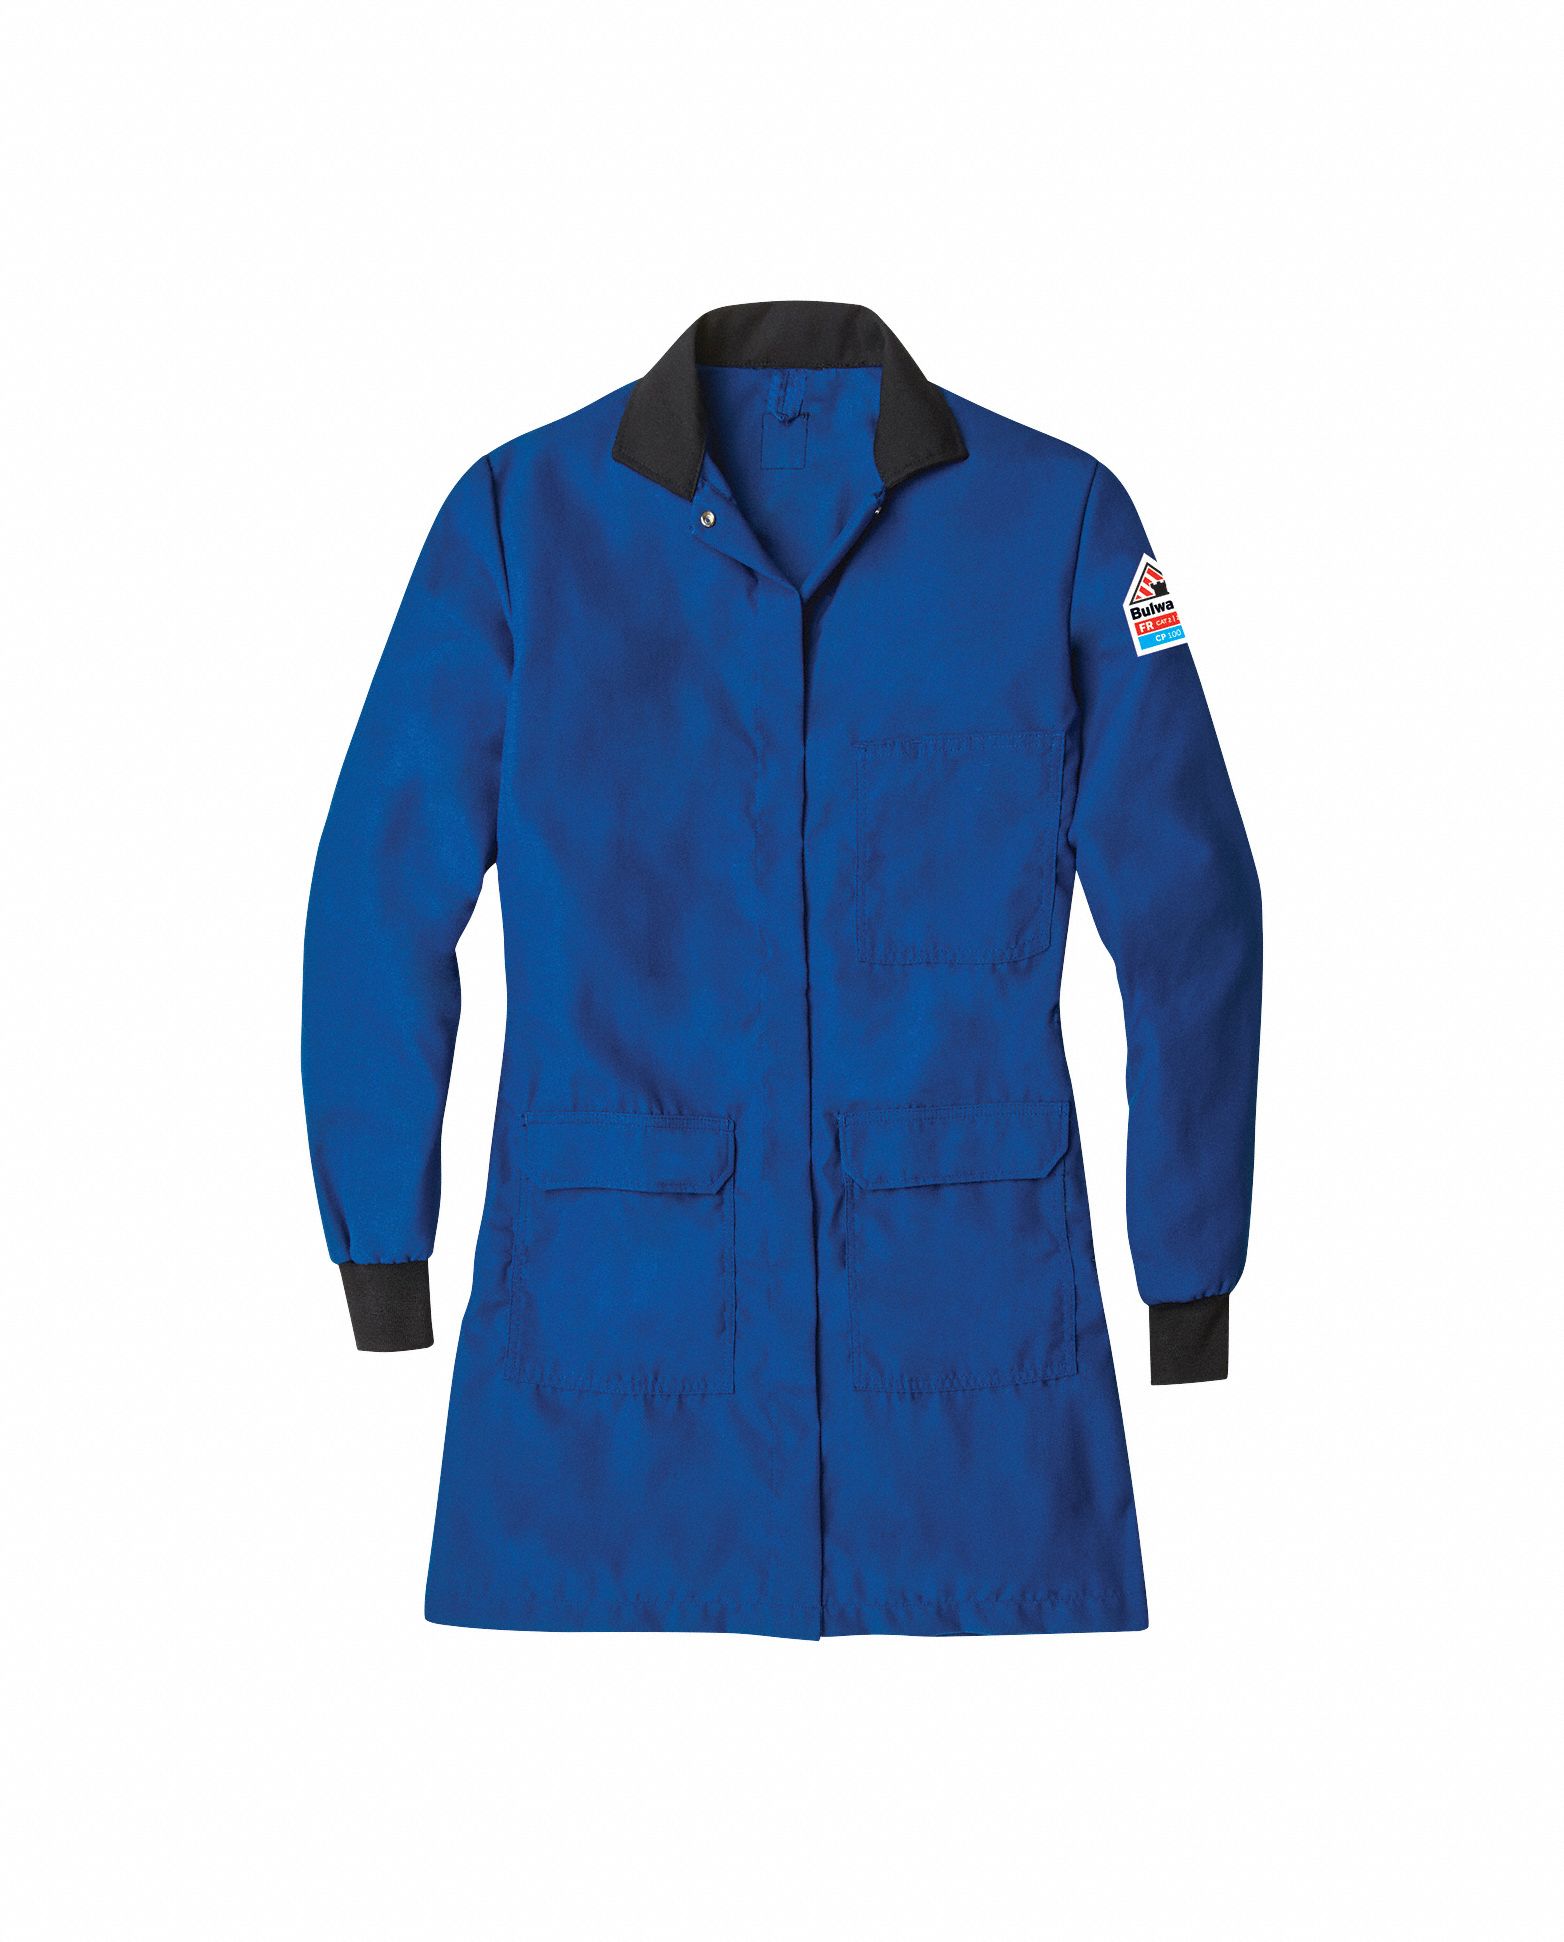 FR Lab Coat: 1 PPE CAT, 5.6 cal/sq cm ATPV, Women's, M, Nomex® IIIA ( 4.5 oz ), Snaps